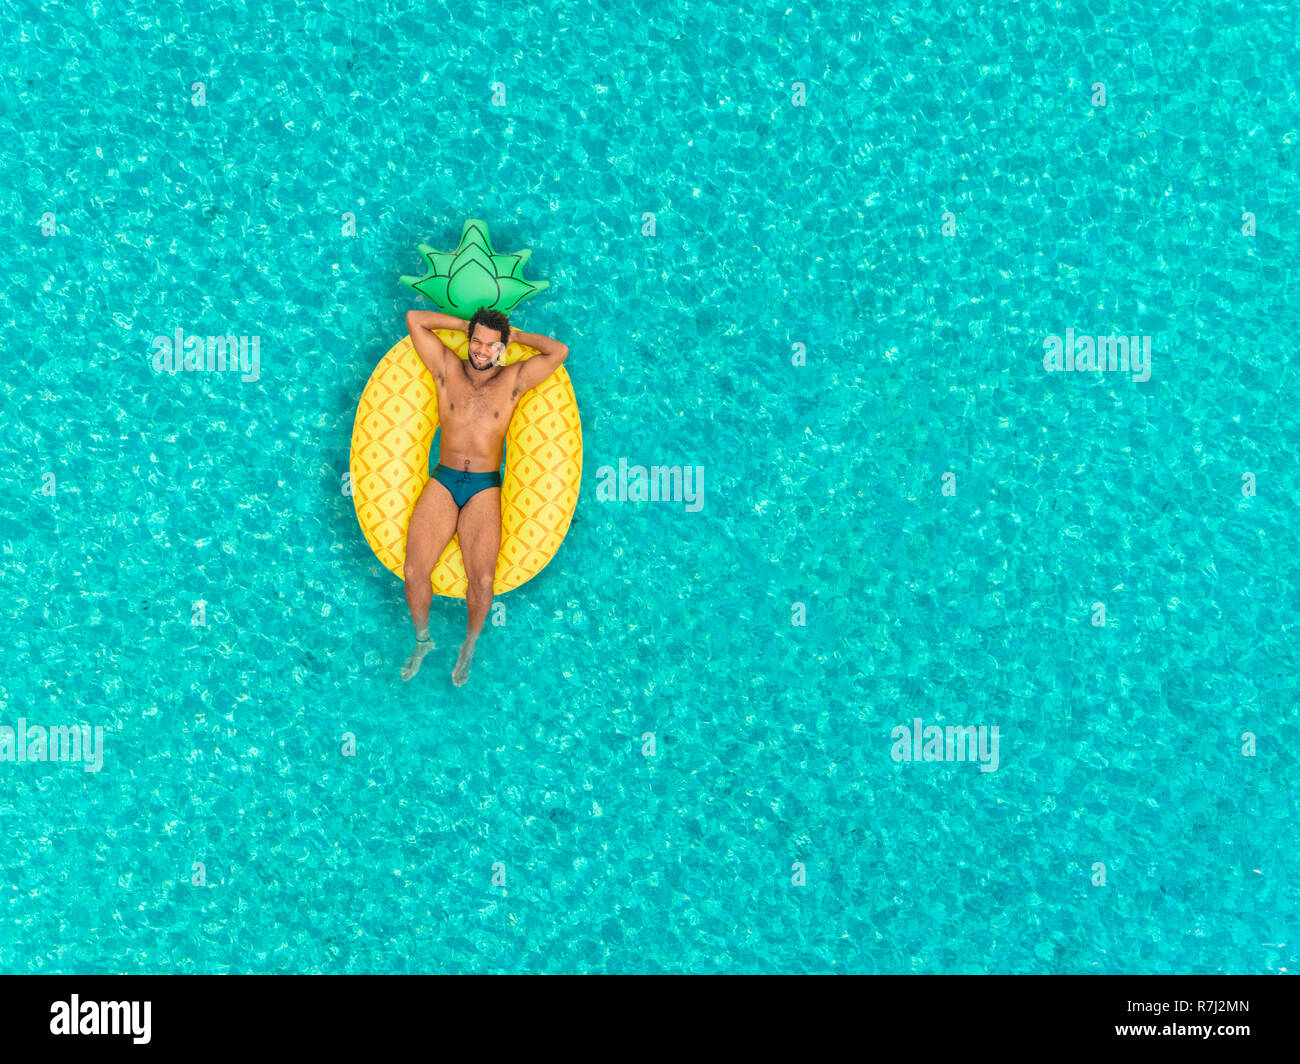 Vista aerea dell'uomo sul galleggiante gonfiabile a forma di ananas materasso, sorridente. Foto Stock